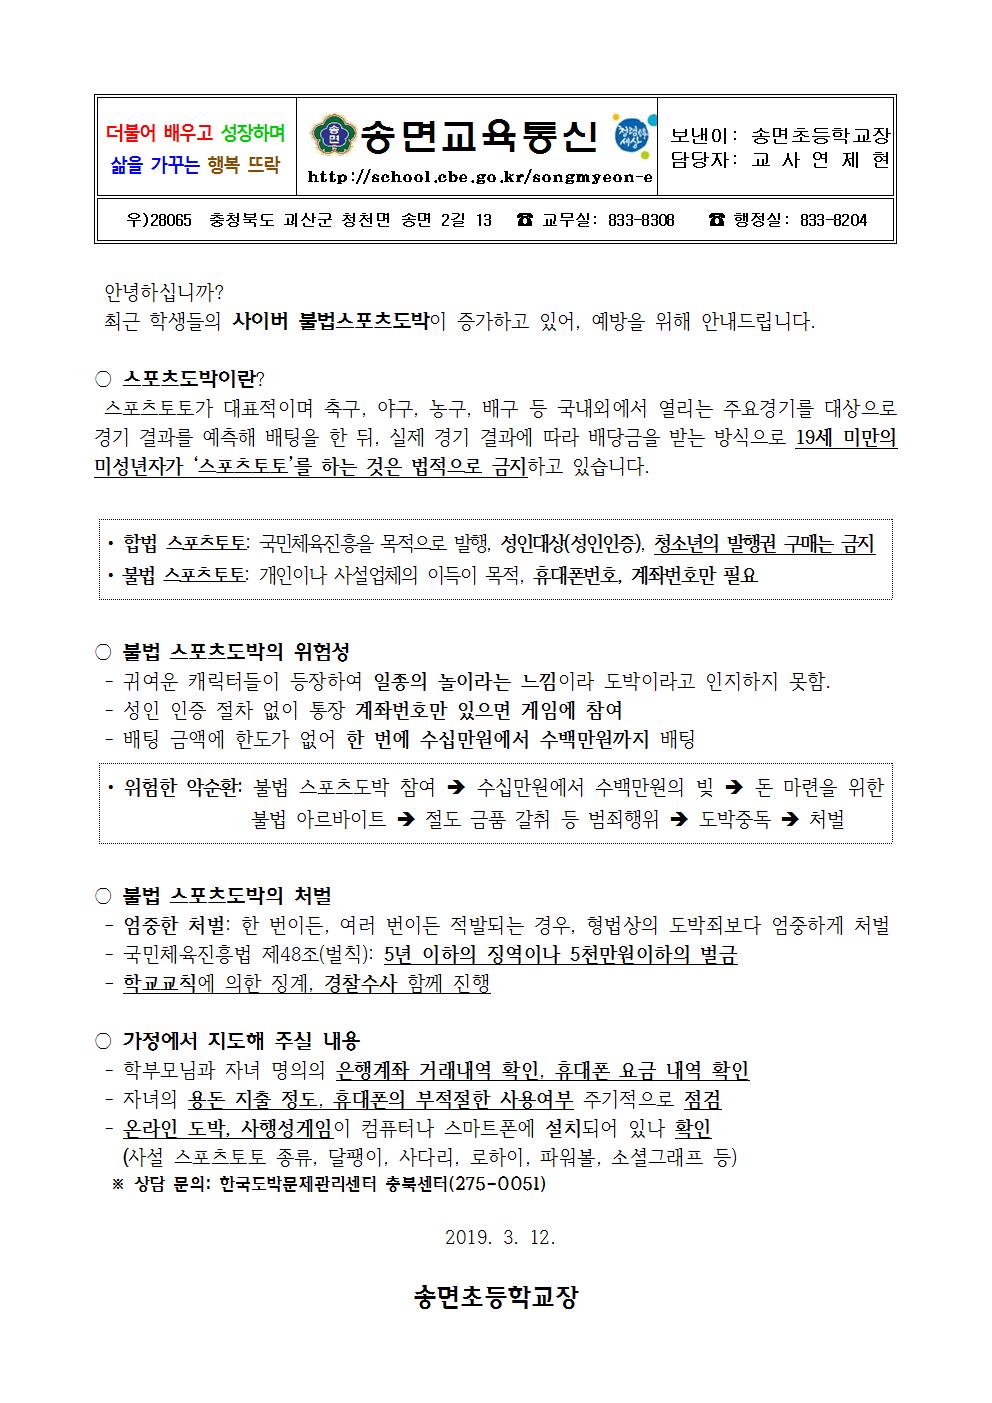 2019. 사이버불법도박 예방 가정통신문